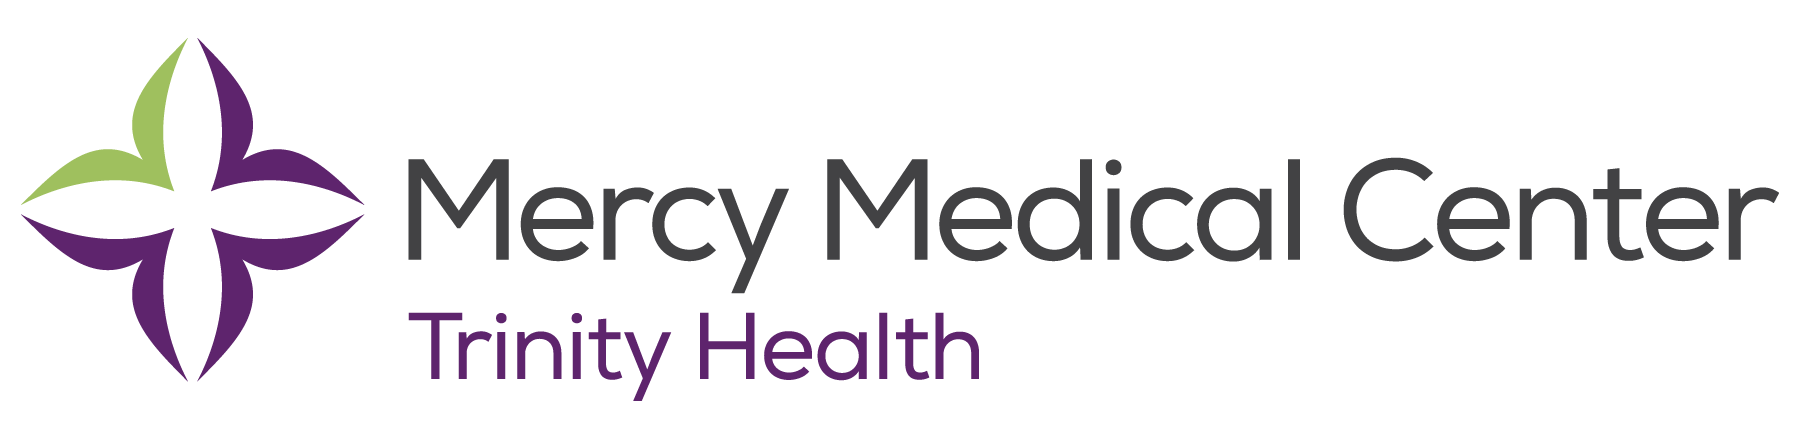 Mercy Medical Center Trinity Health logo 2021